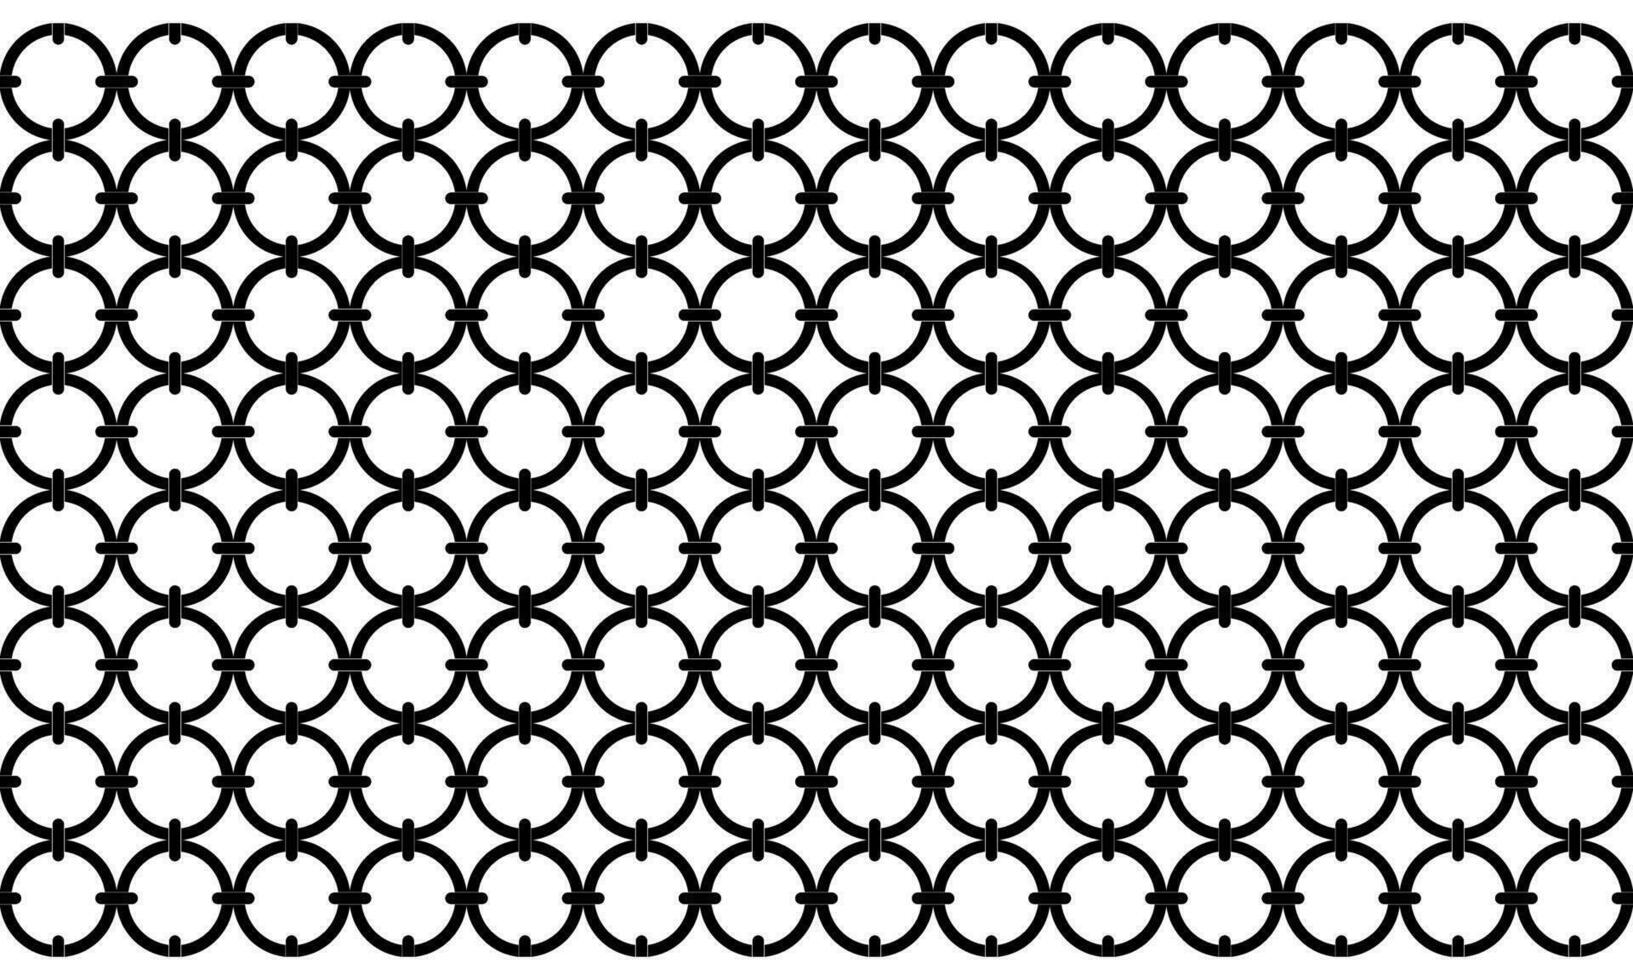 förbindelse cirkel form motiv mönster, kan använda sig av för utsmyckad, bakgrund eller för dekoration. modern samtida mönster stil. vektor illustration